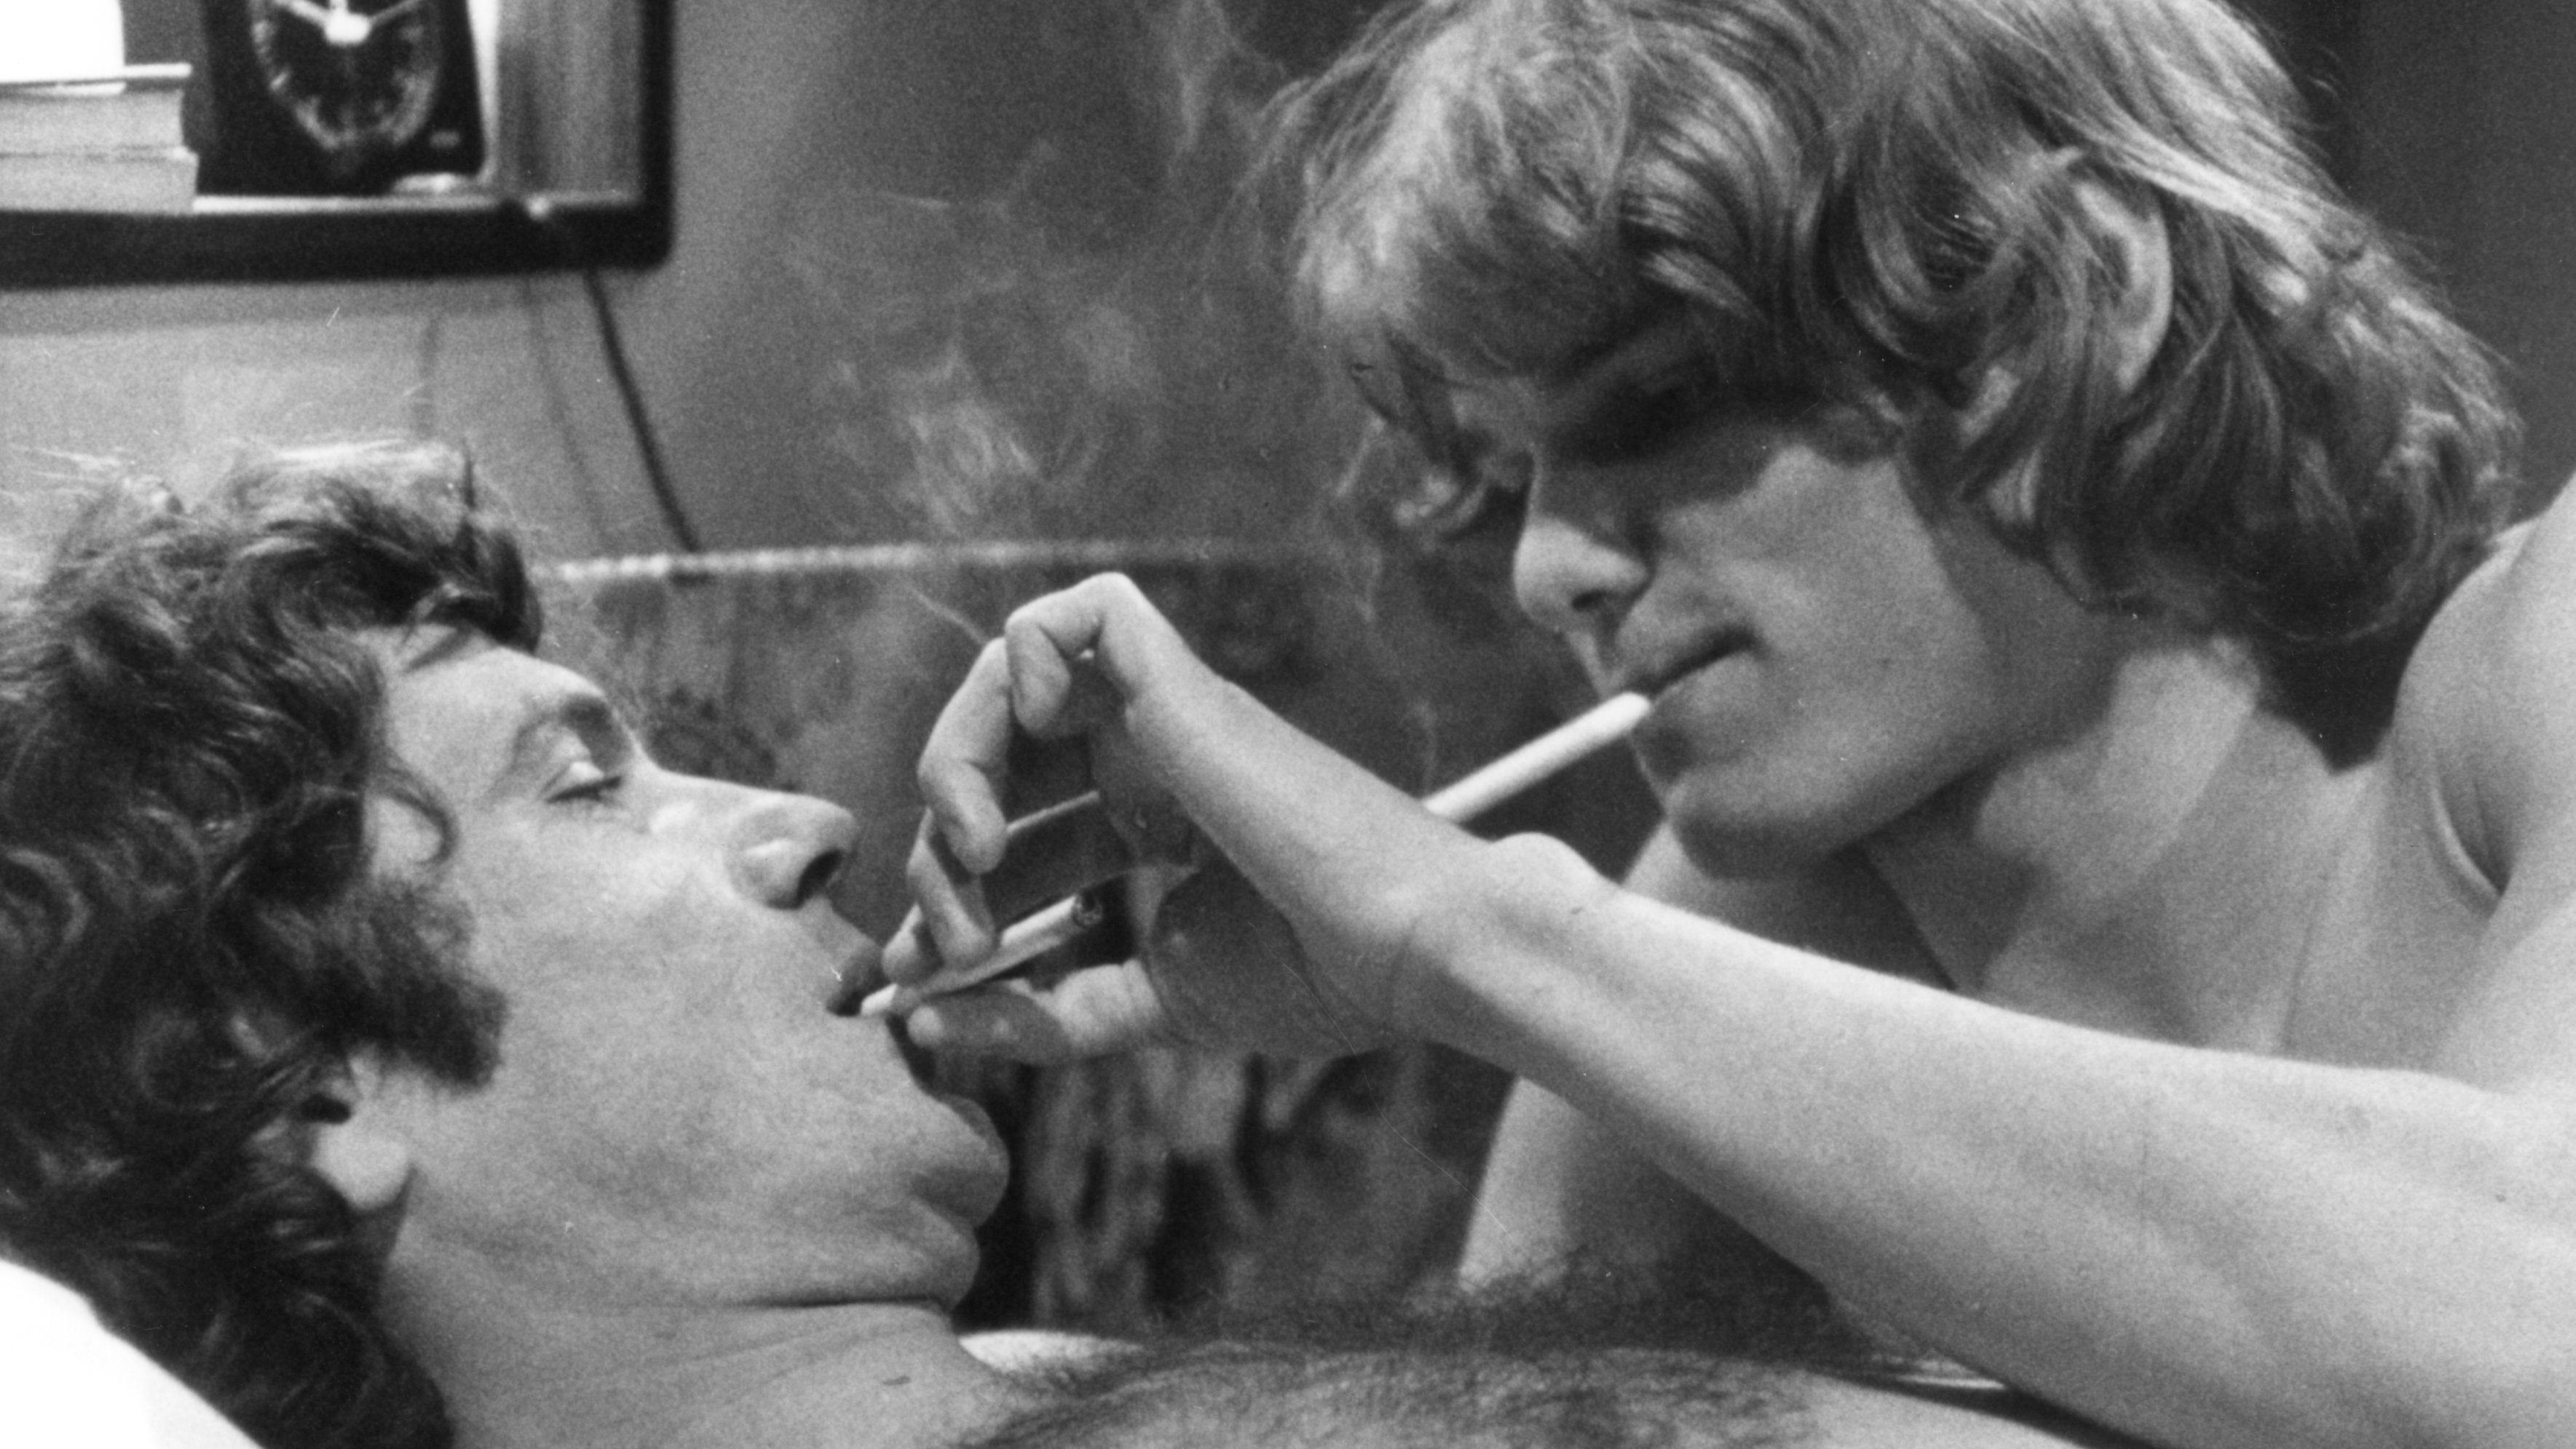 Filmbild aus "Die Konsequenz", zwei Darsteller rauchen gemeinsam